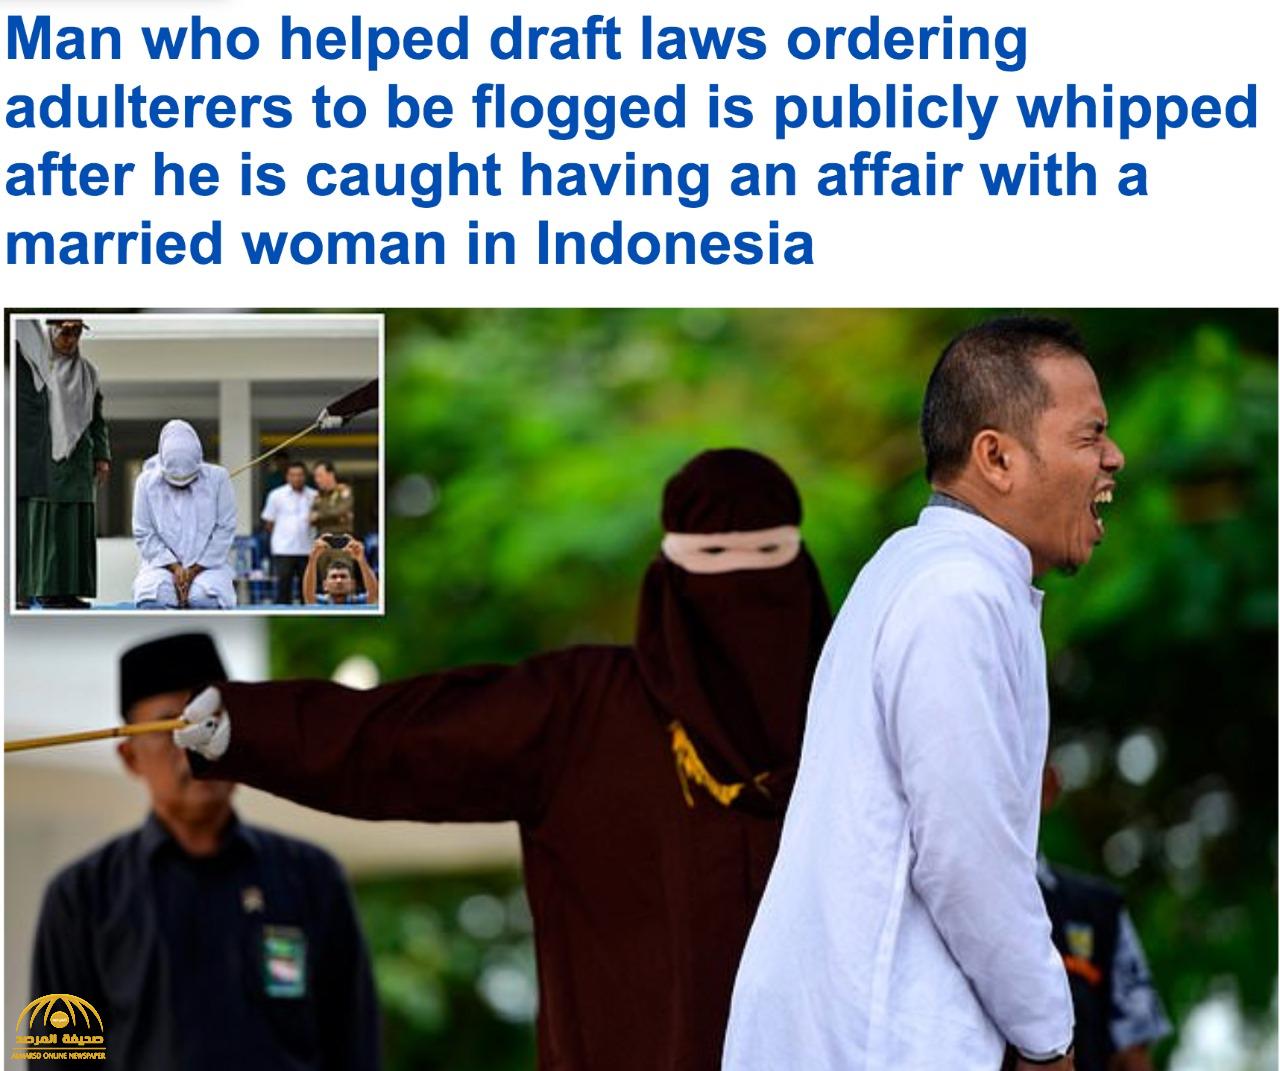 يا لسخرية القدر .. شاهد رجل دين إندونيسي ساعد في صياغة قوانين جلد الزناة يٌجلد بعد القبض عليه مع امرأة متزوجة